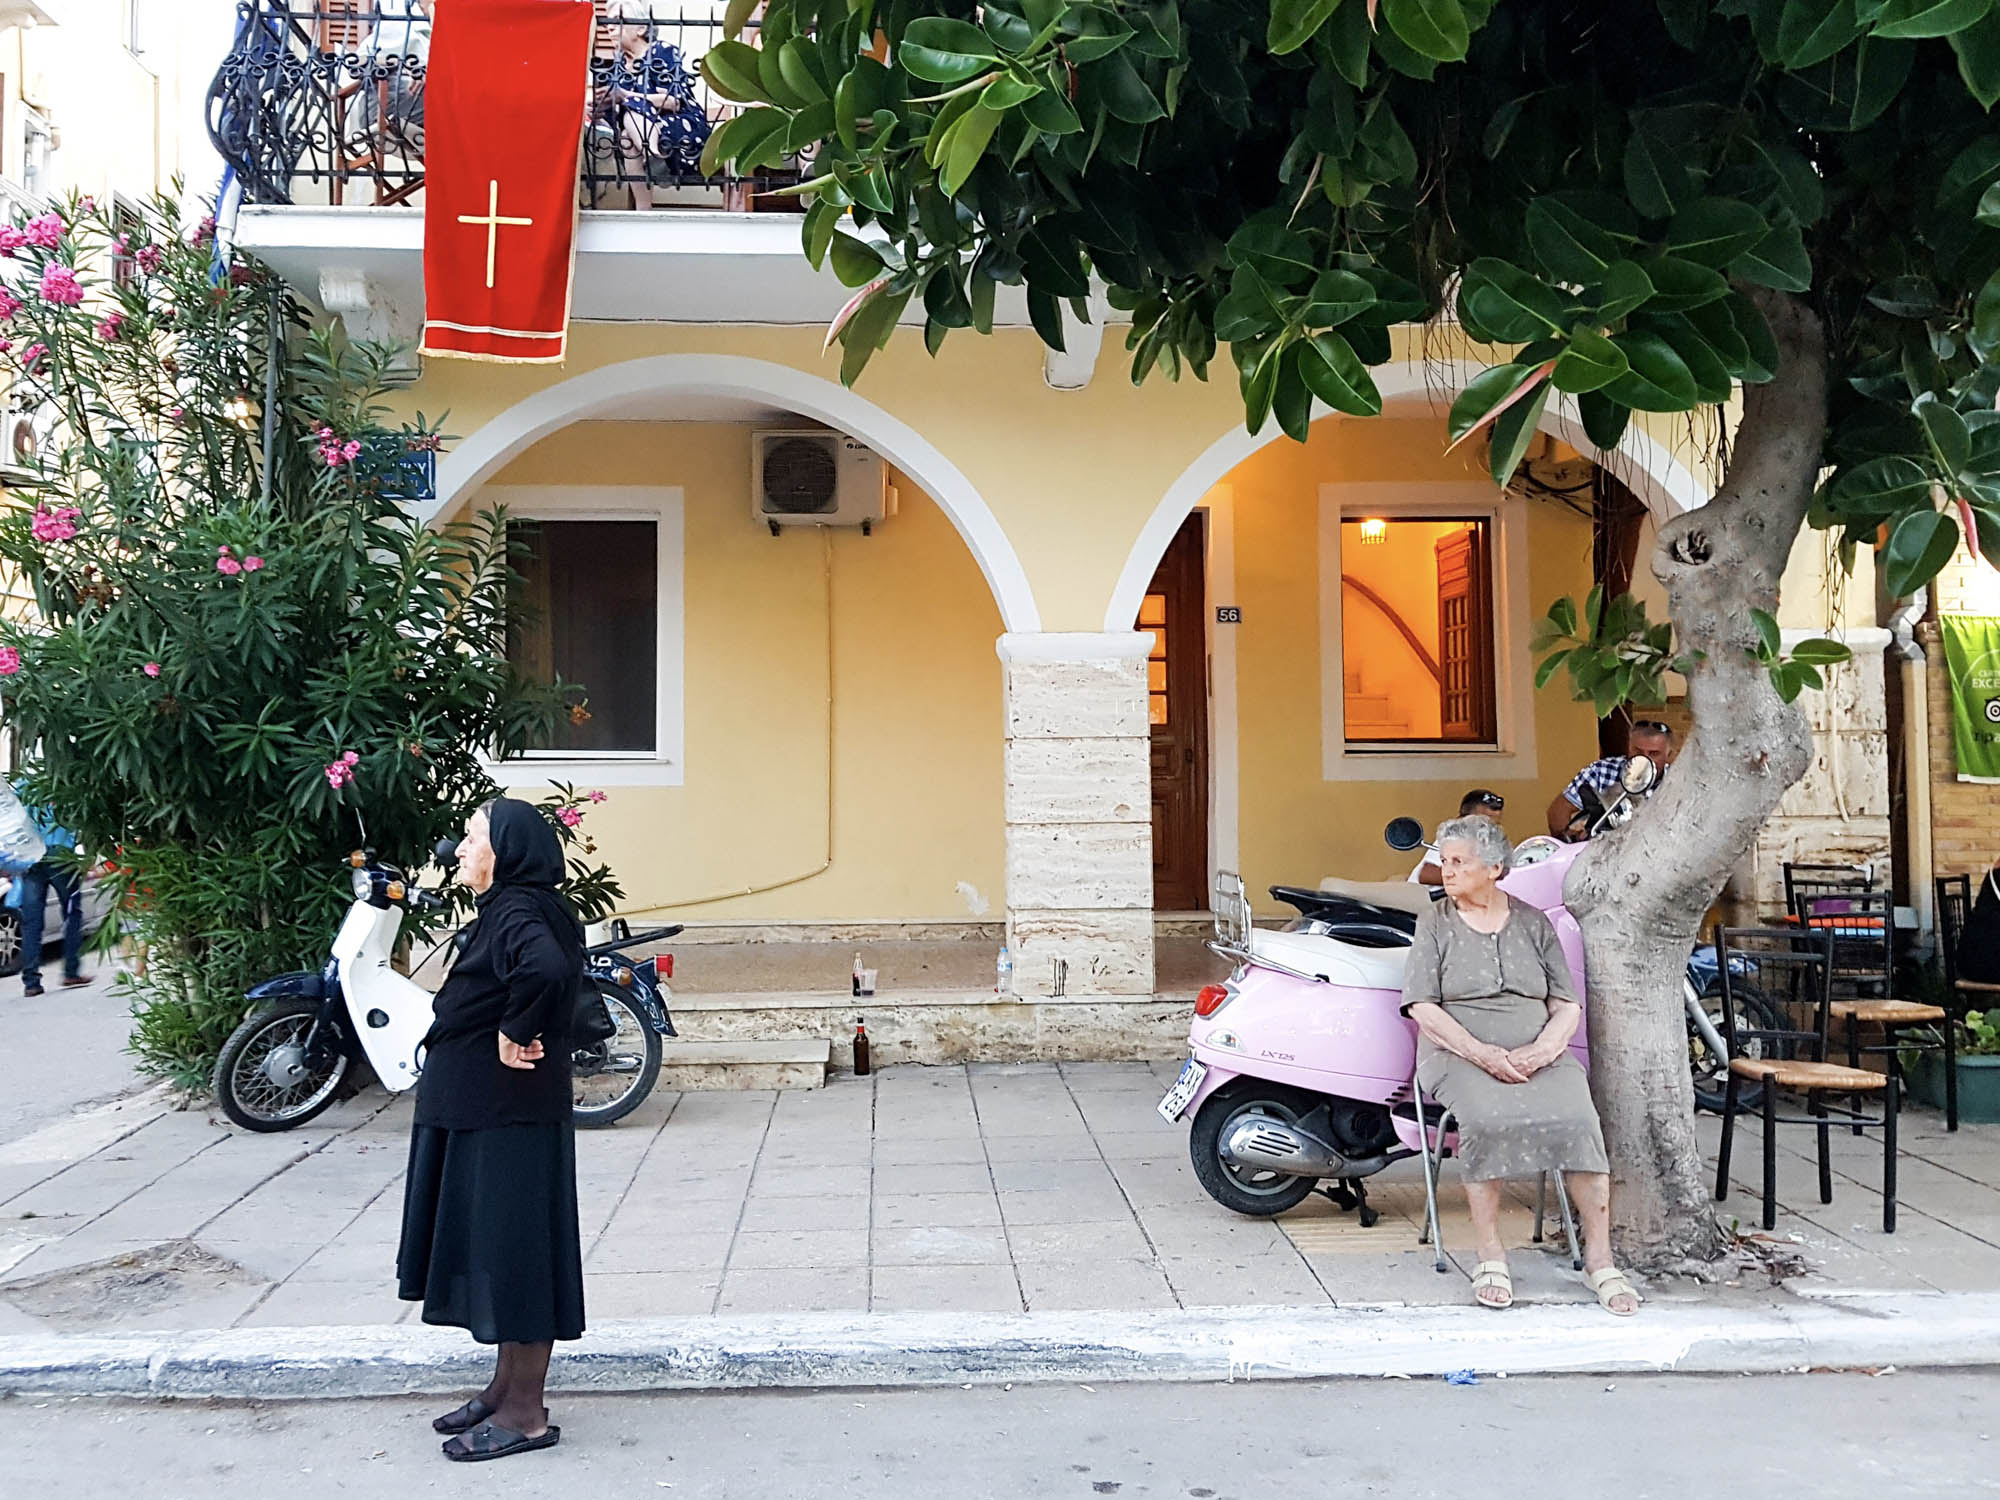 grecka ulica, typowe zdjęcie z ludźmi i skuterem